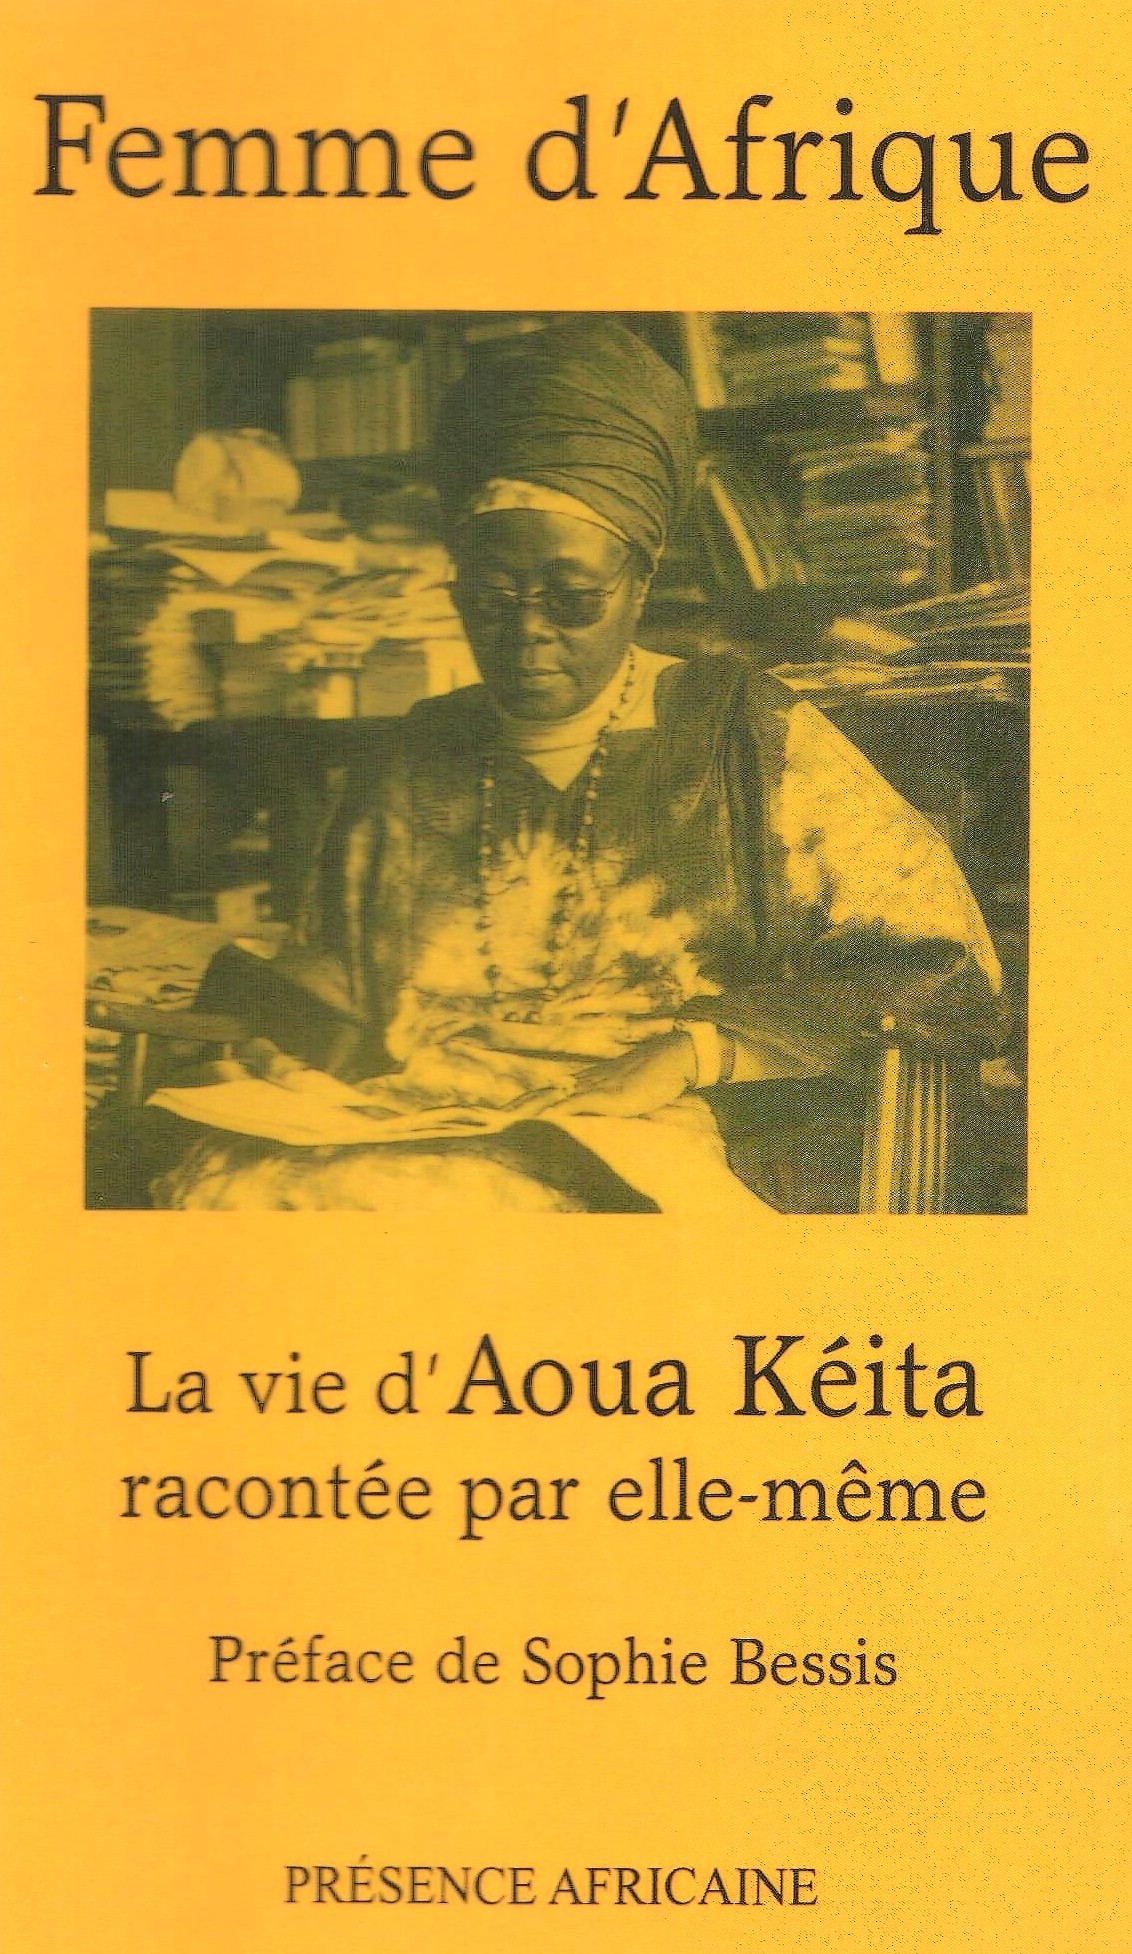 Femme D Afrique La Vie D Aoua Keita Presence Africaine Editions